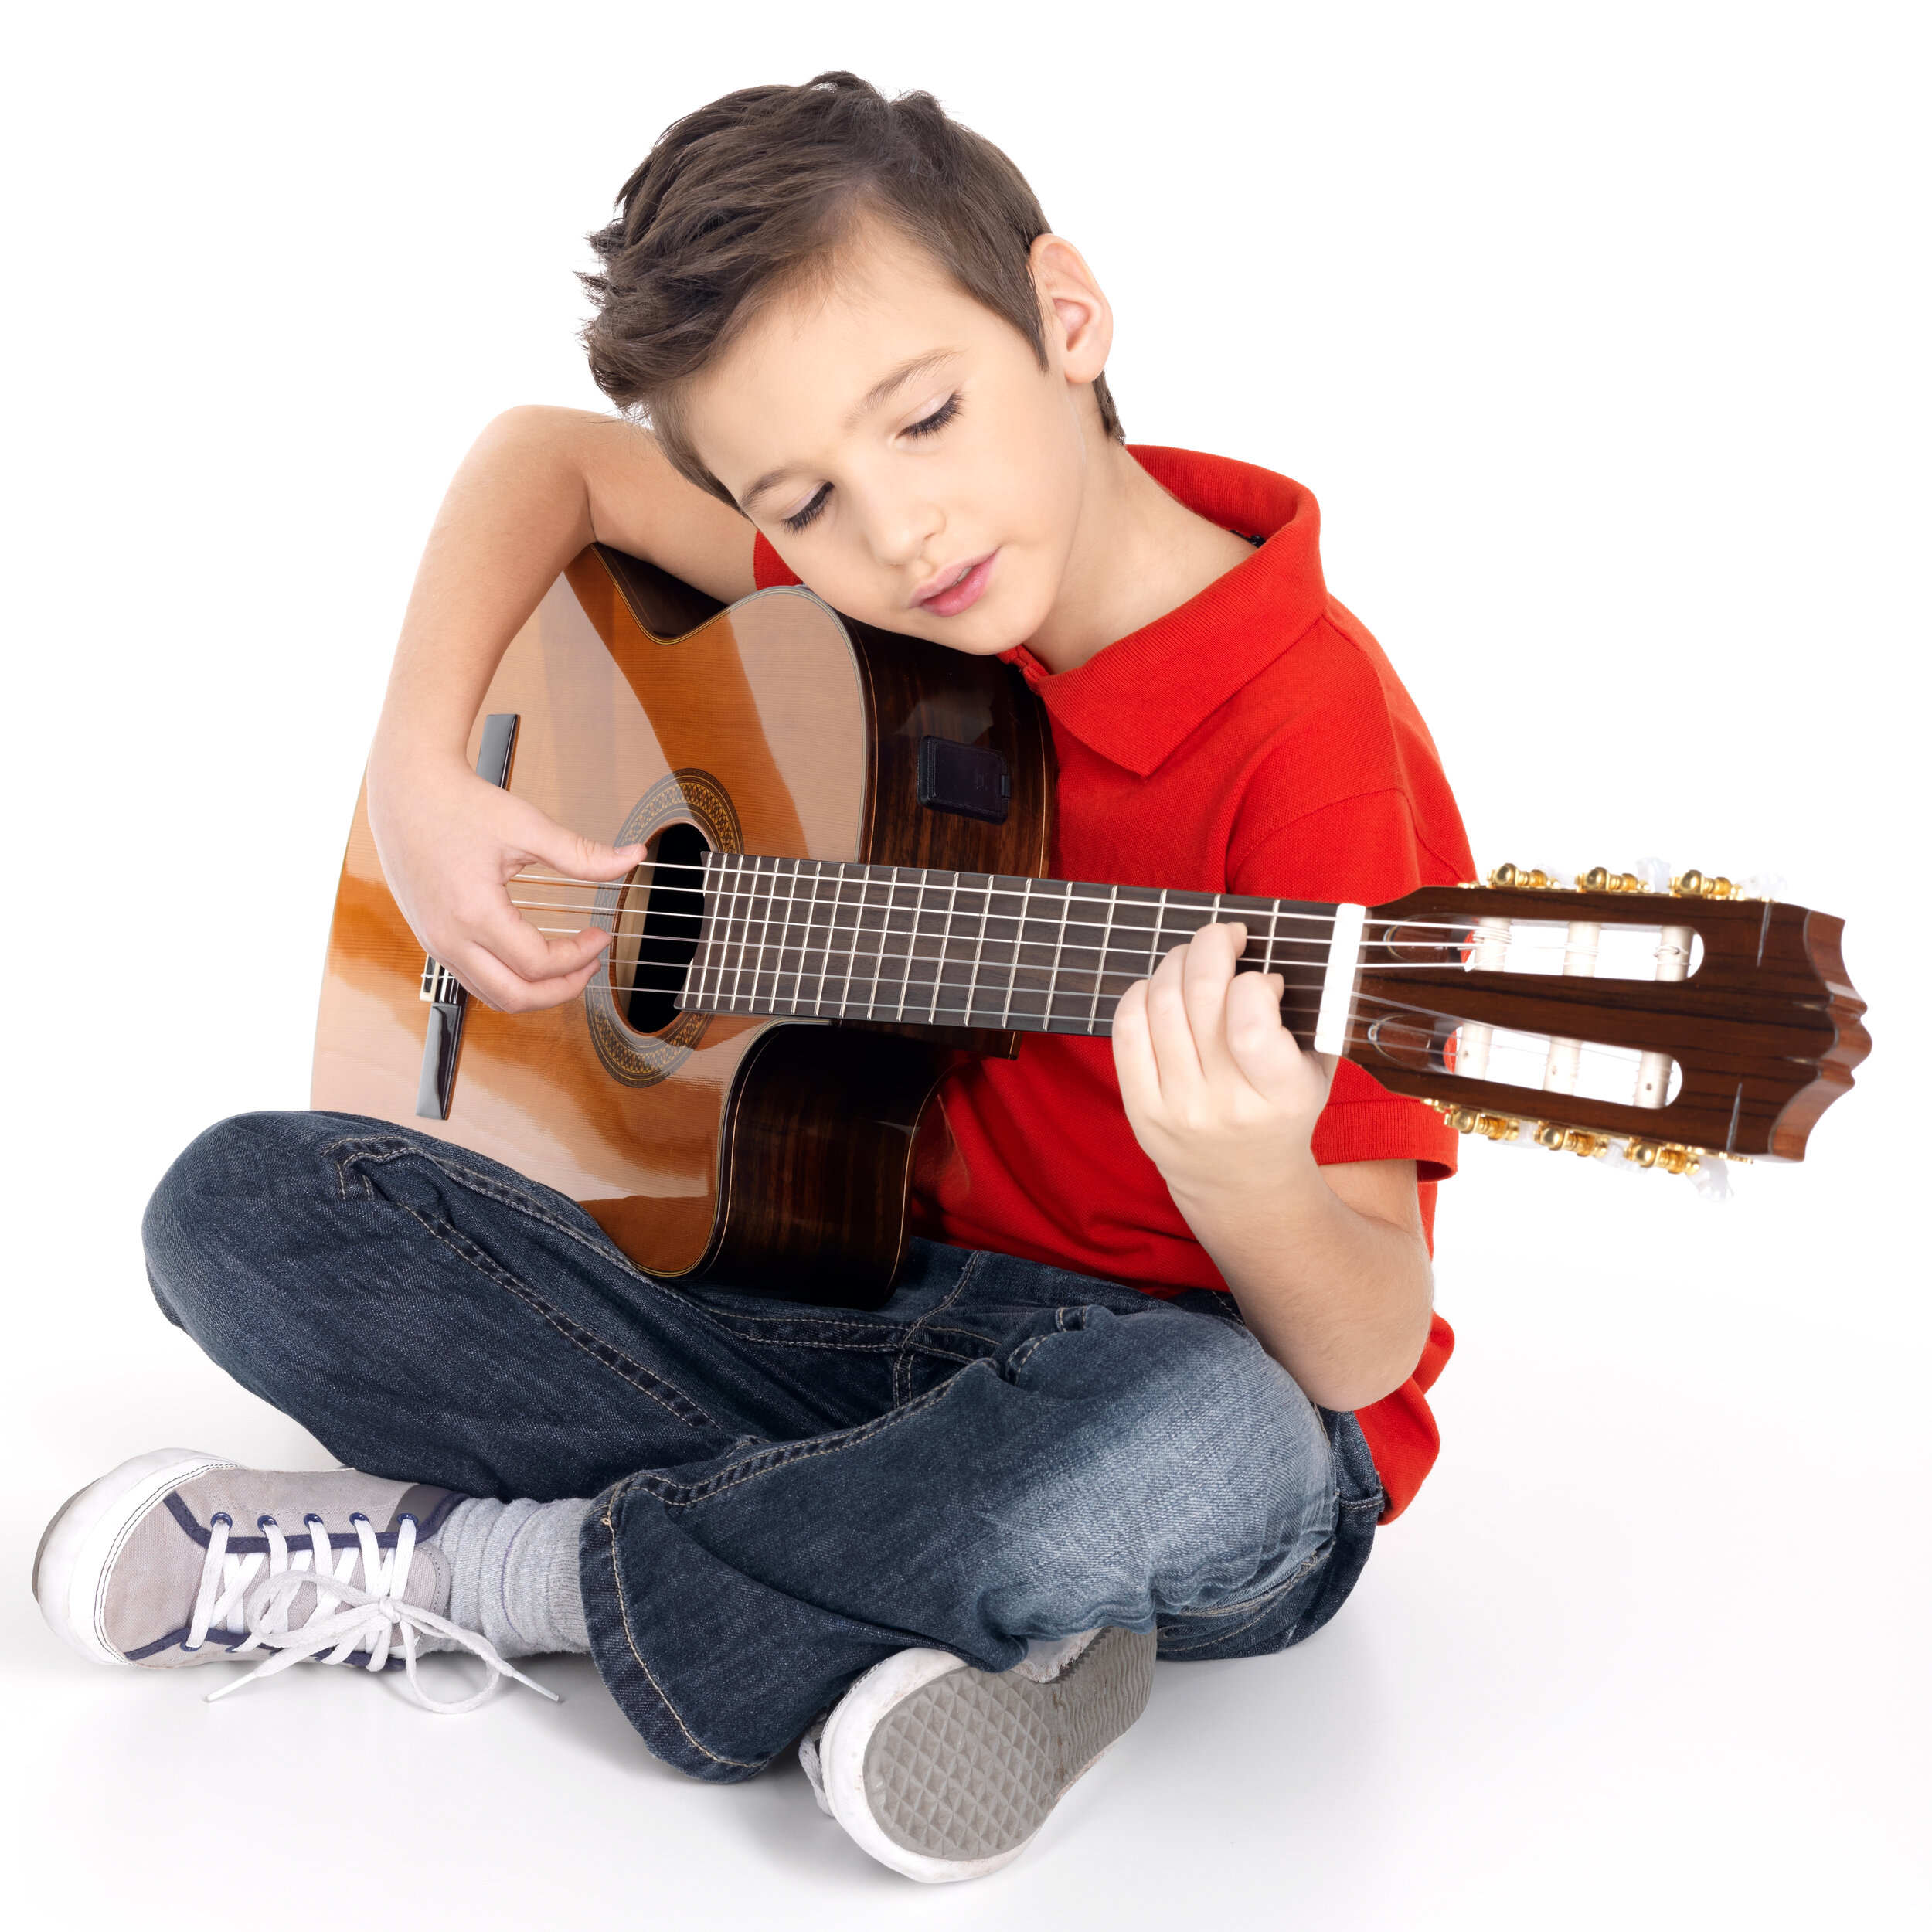 He can play guitar. Гитара для детей. Мальчик с гитарой. Мальчик гитарист. Мальчик с электрогитарой.